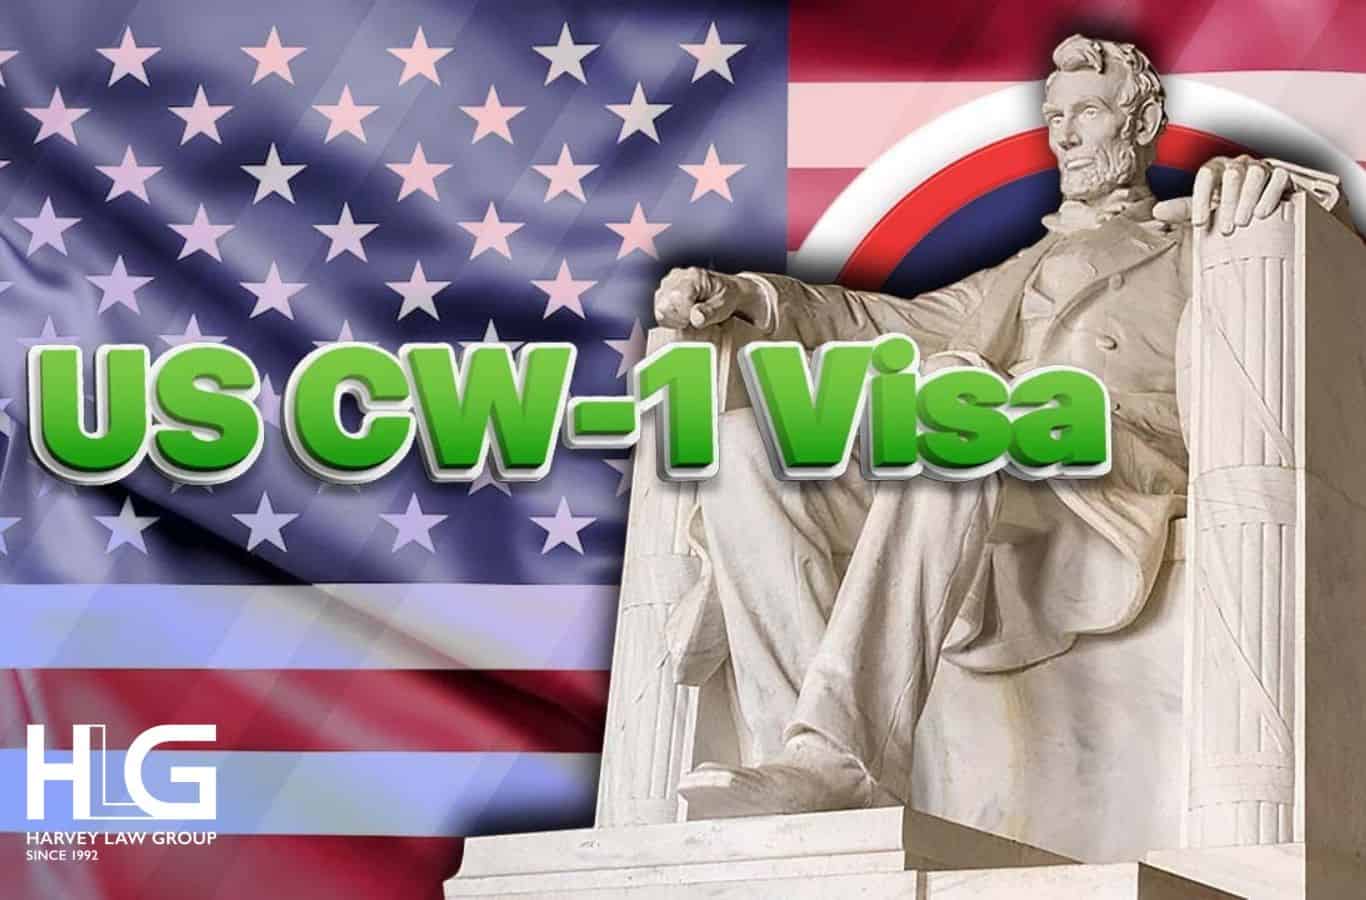 visa CW-1